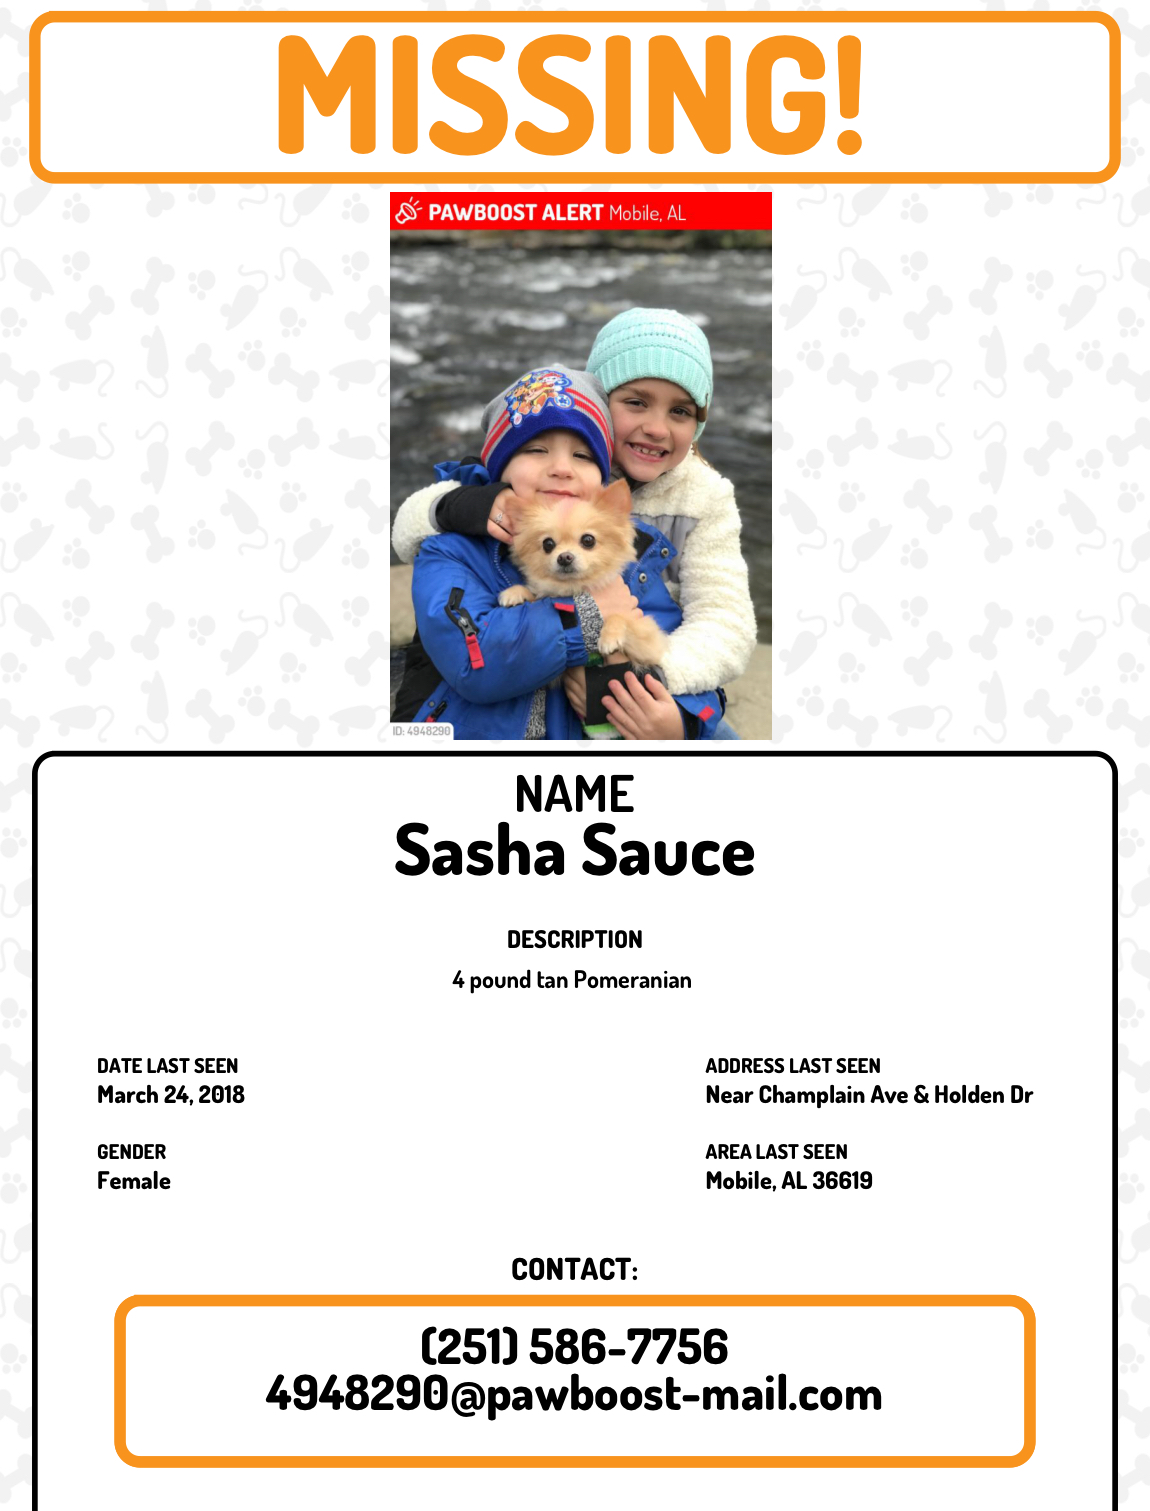 Image of Sasha sauce, Lost Dog